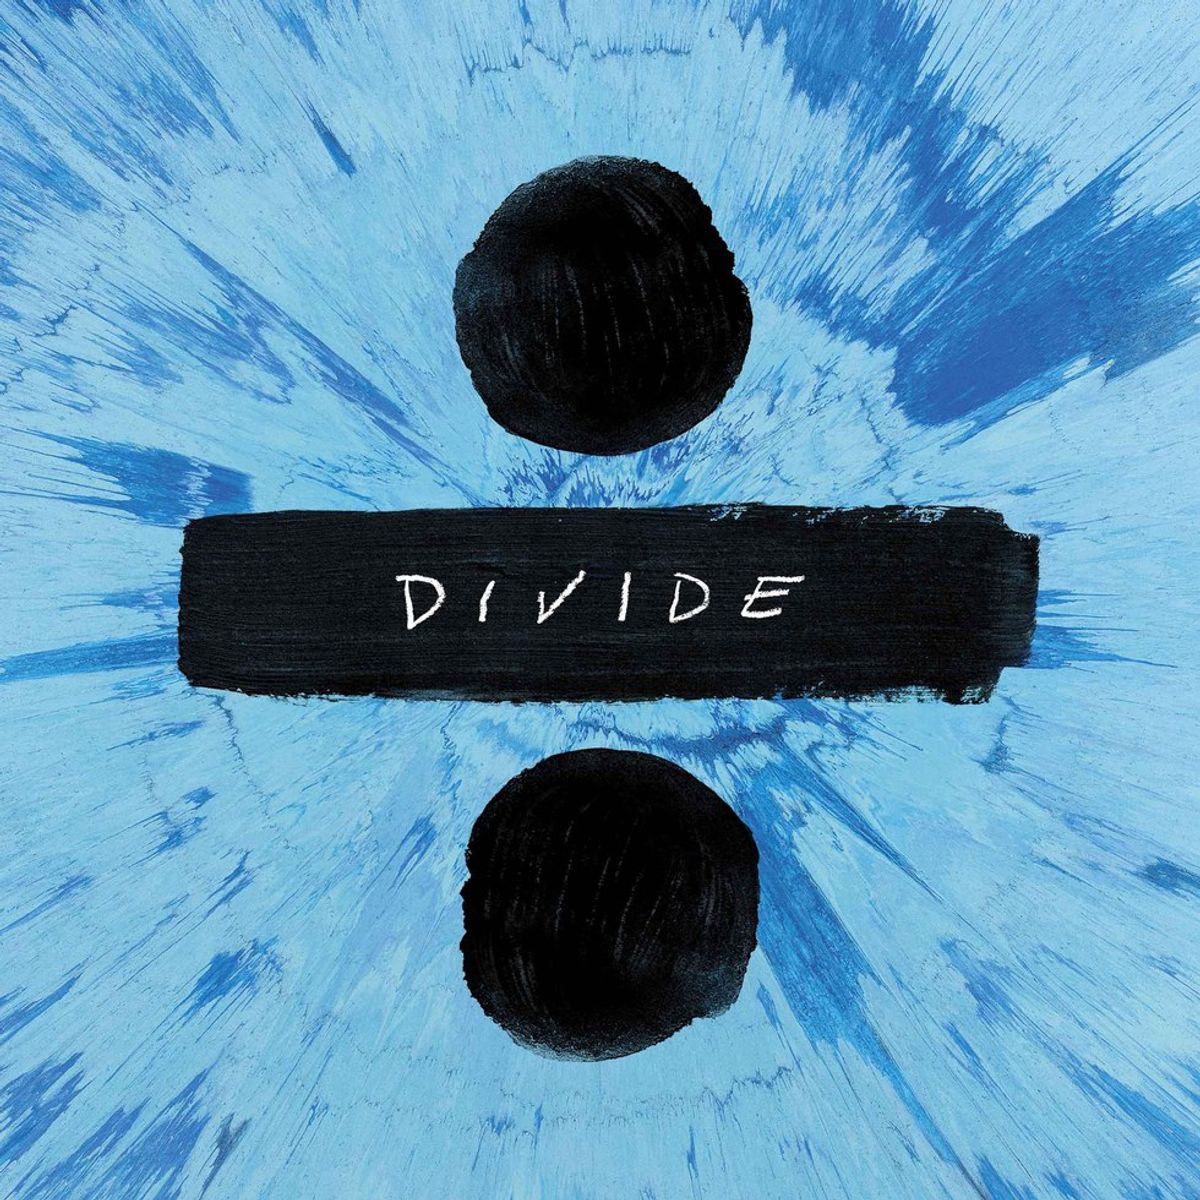 Review of Ed Sheeran's Album "Divide"